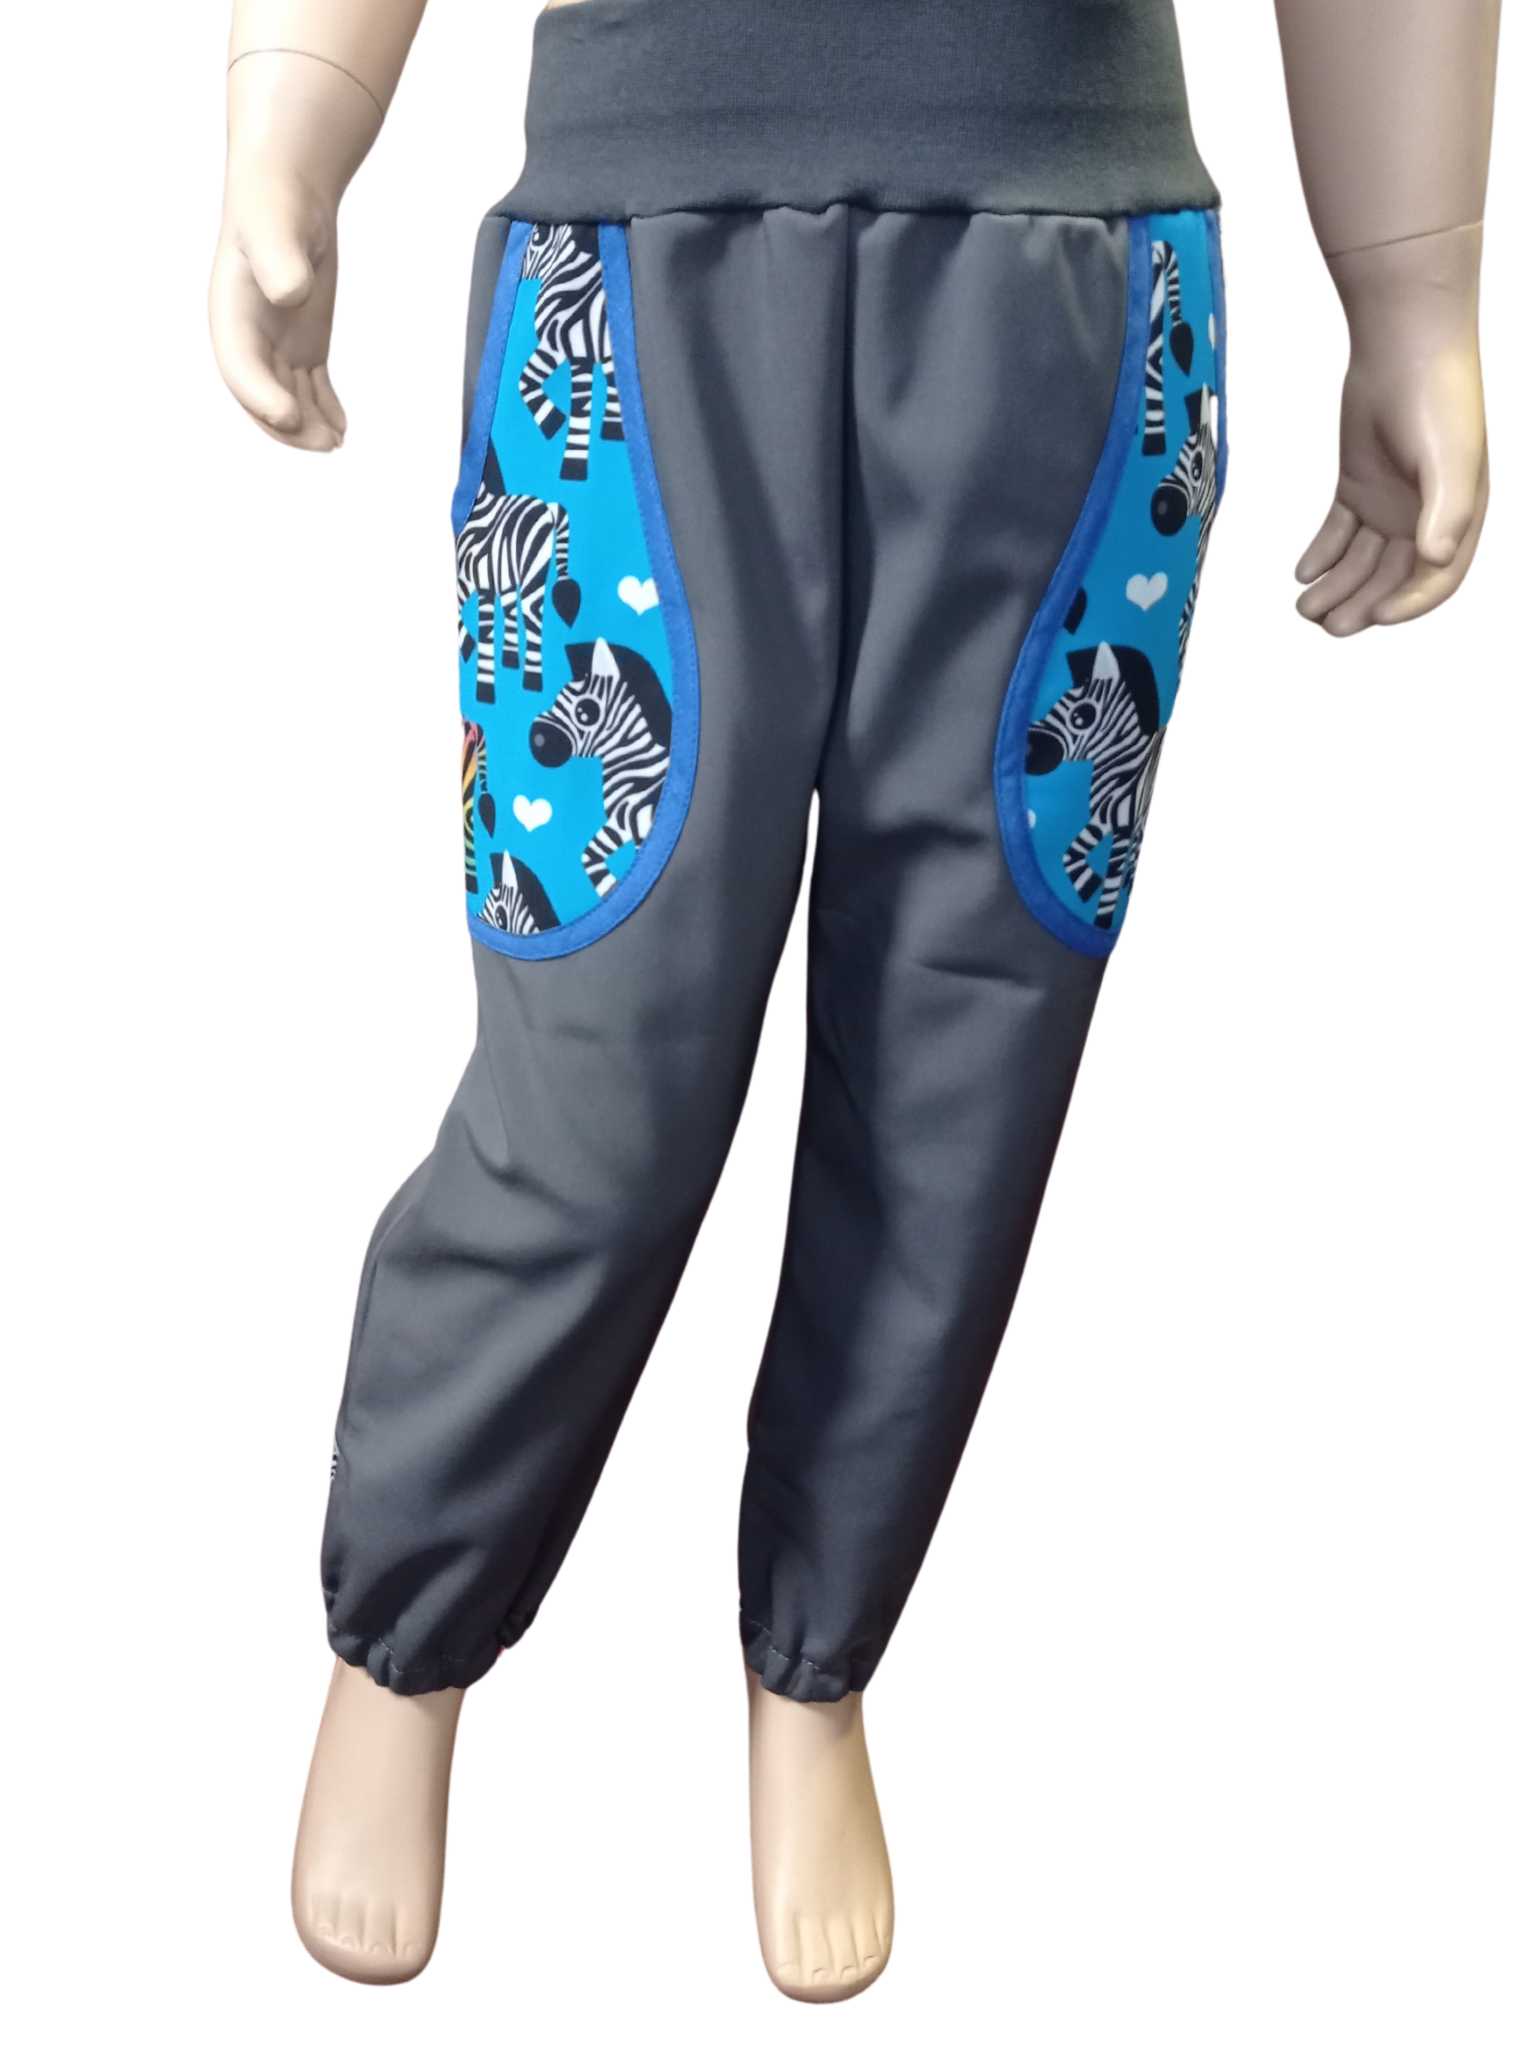 Abeli Softshellové kalhoty s flísem šedé, zebry modré Velikost: 80